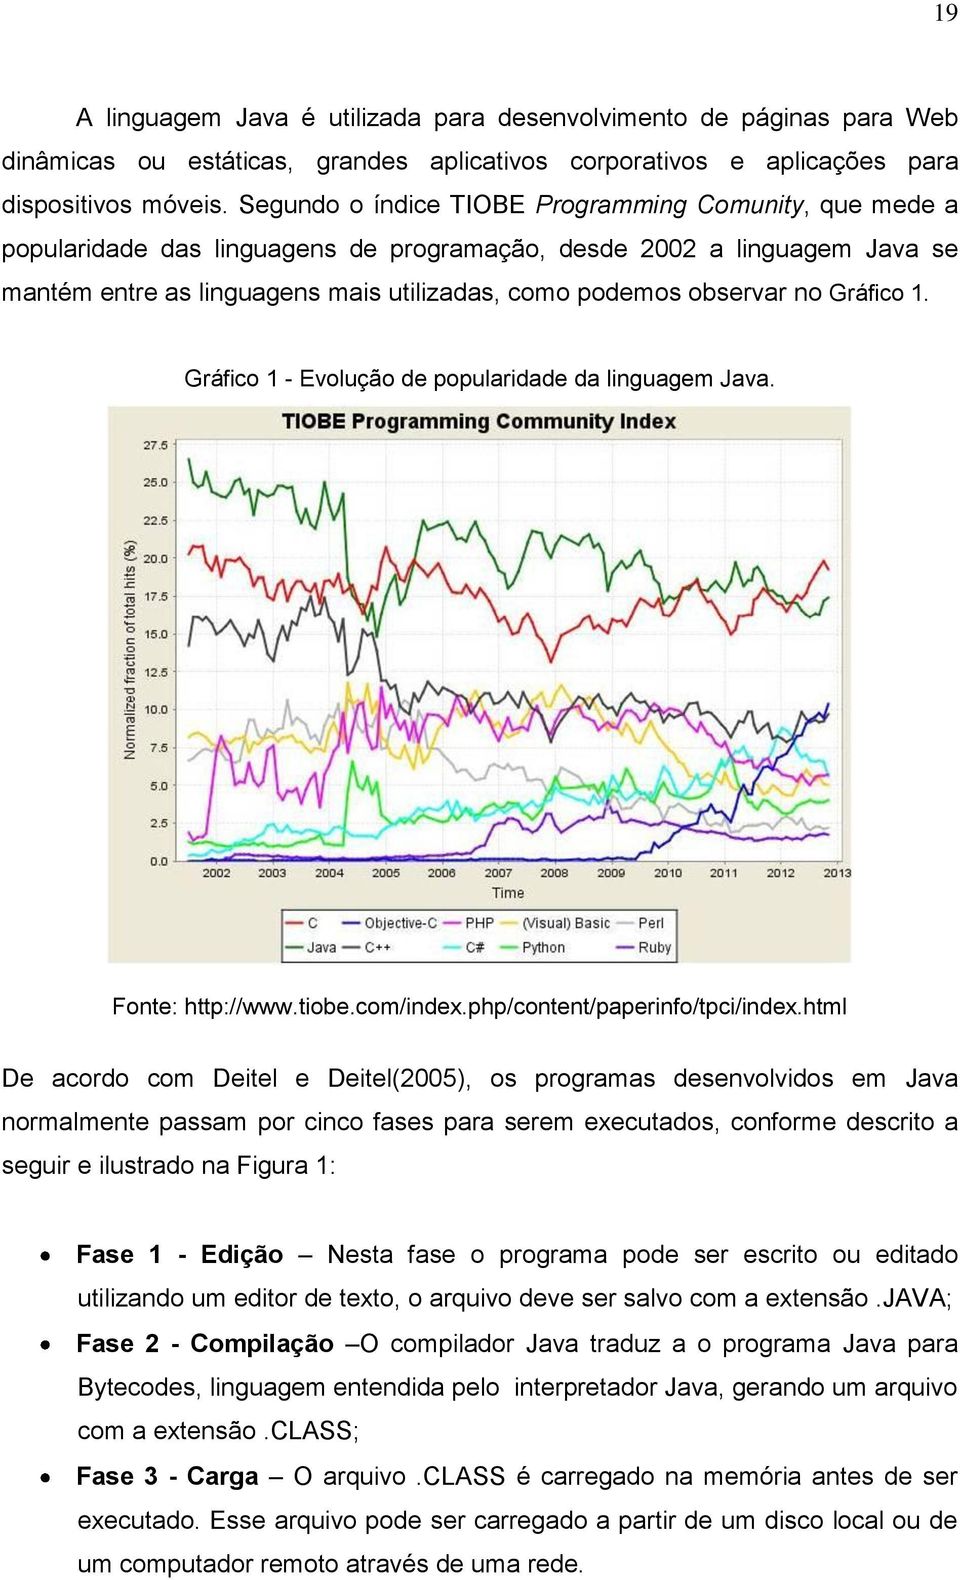 Gráfico 1. Gráfico 1 - Evolução de popularidade da linguagem Java. Fonte: http://www.tiobe.com/index.php/content/paperinfo/tpci/index.